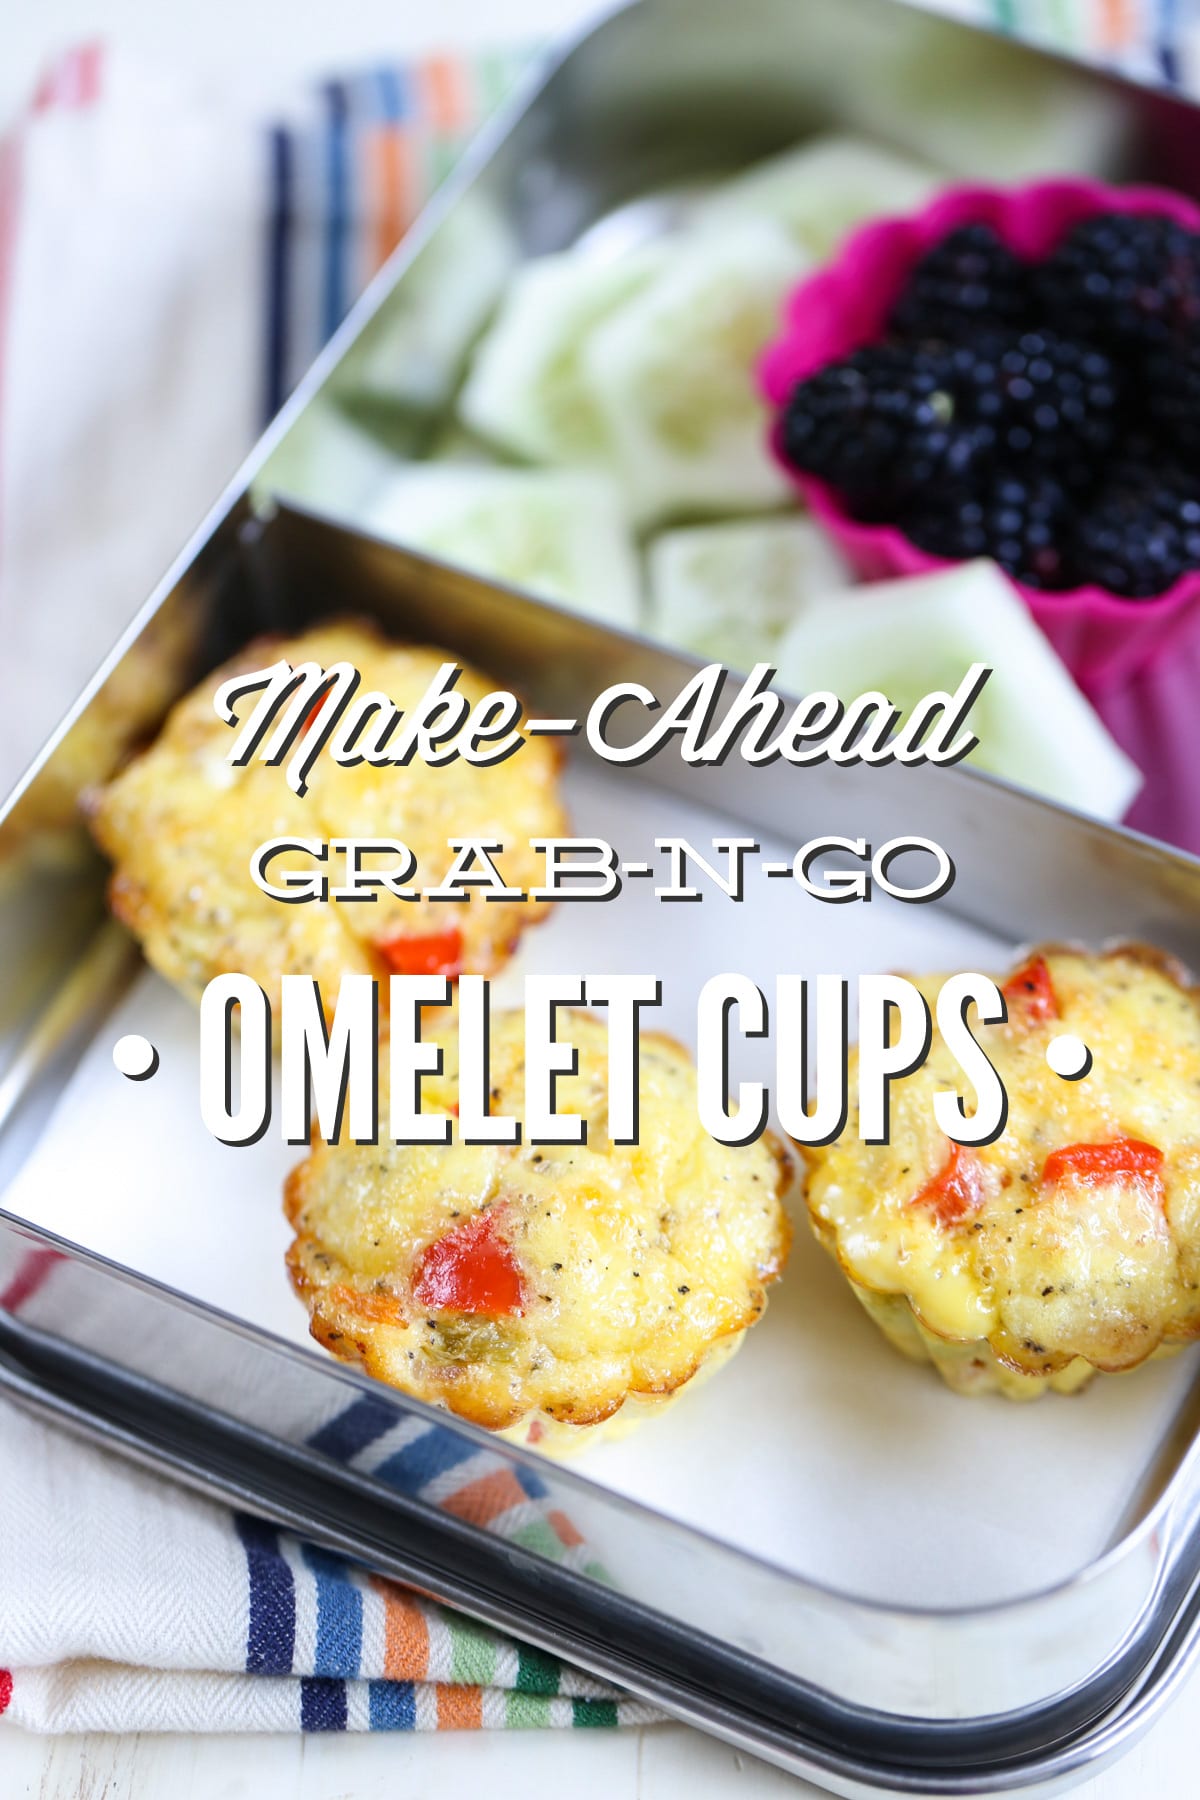 Make-Ahead Grab-n-Go Omelet Cups